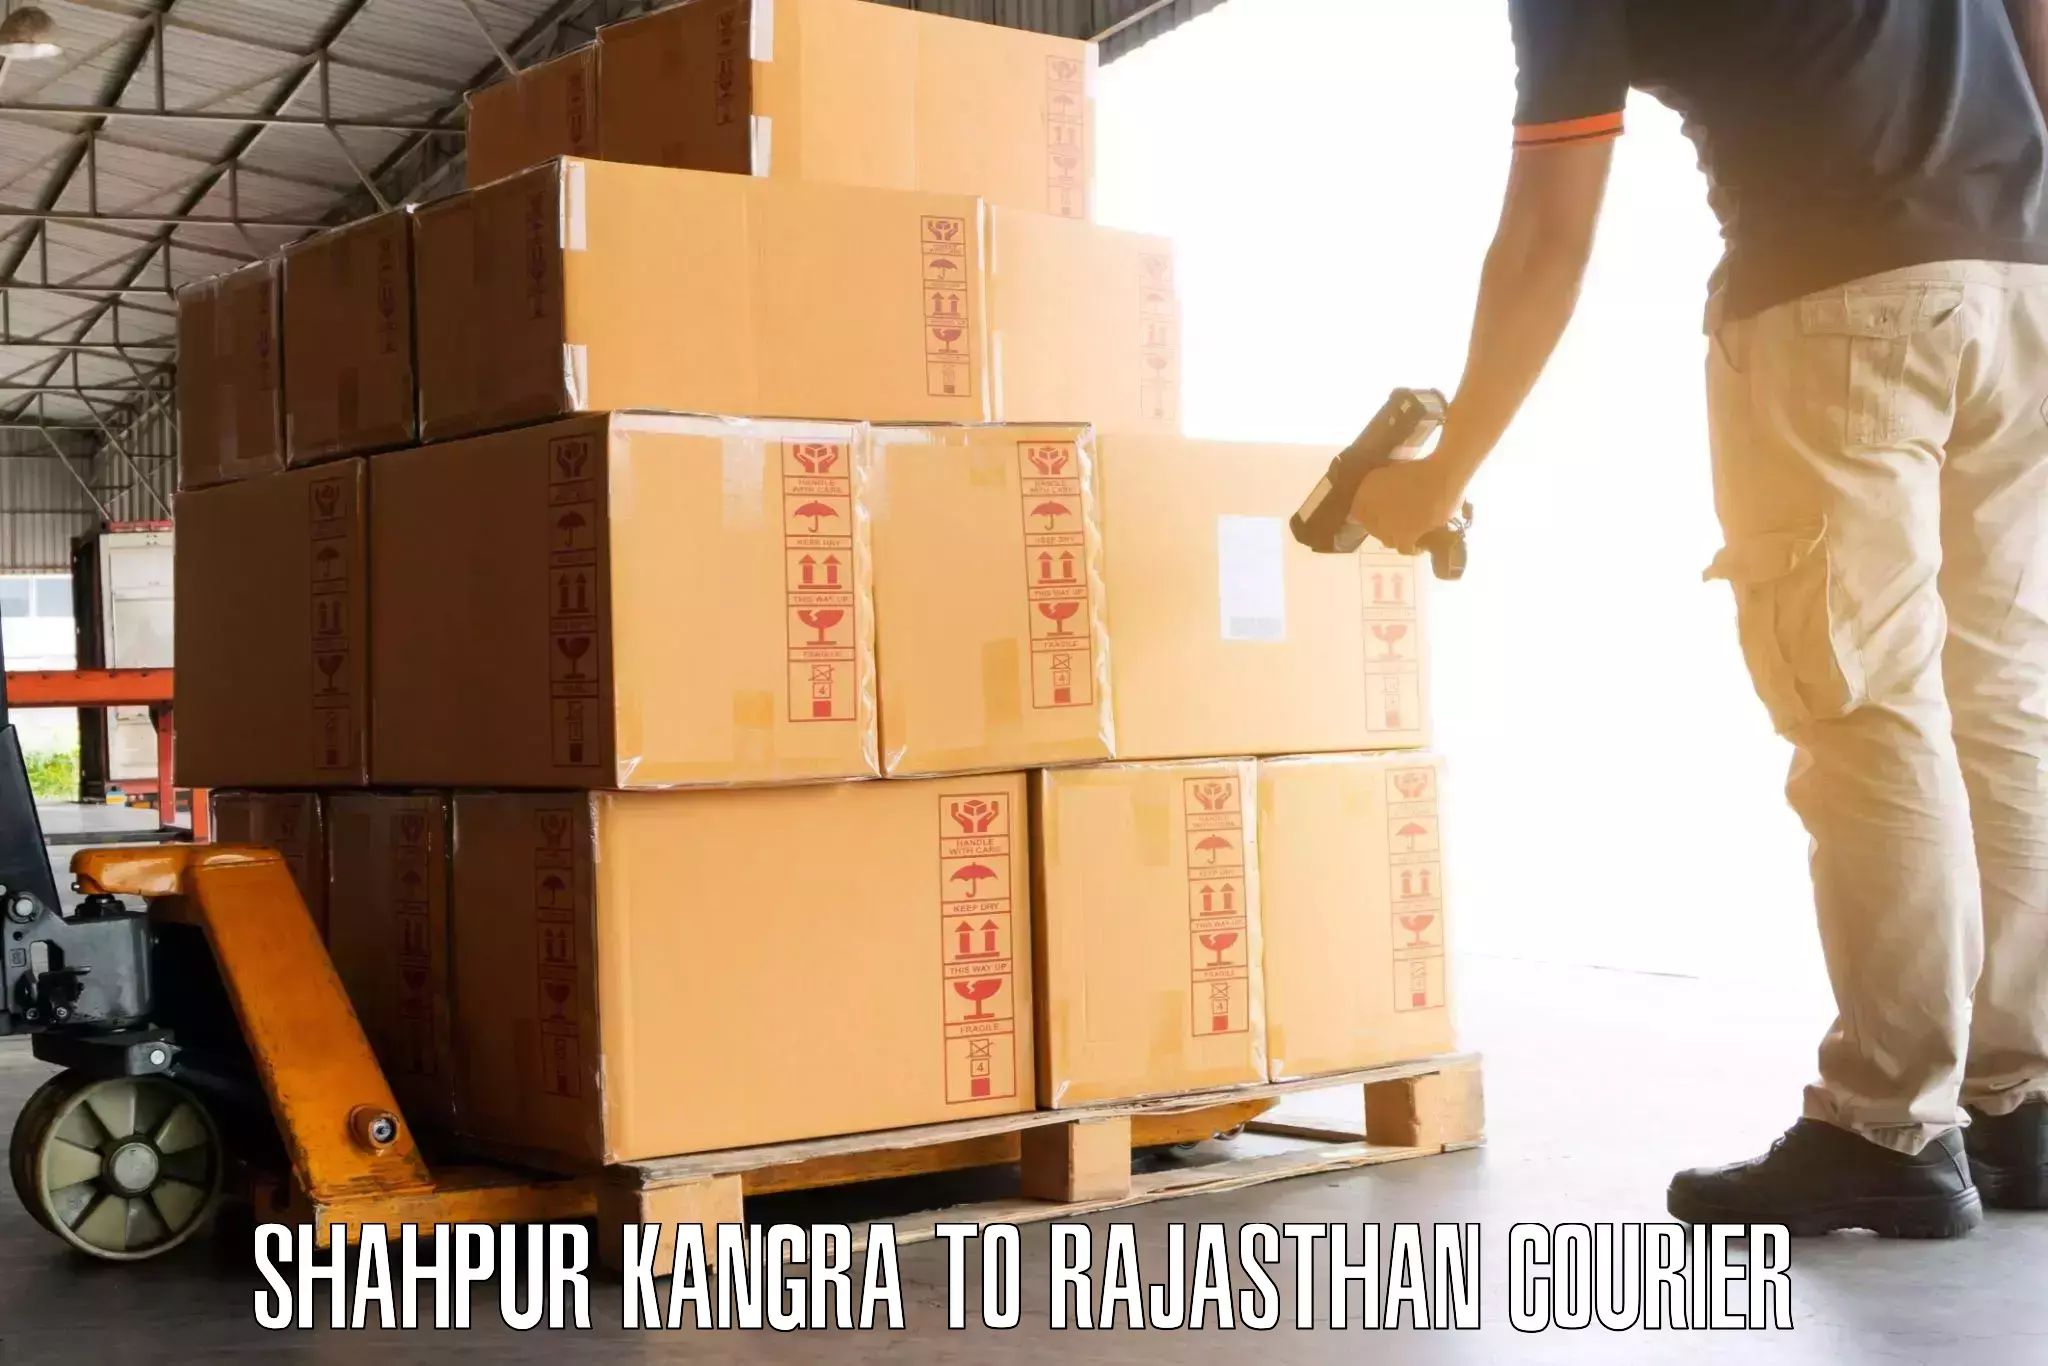 Luggage transport consultancy Shahpur Kangra to Yathalakunta